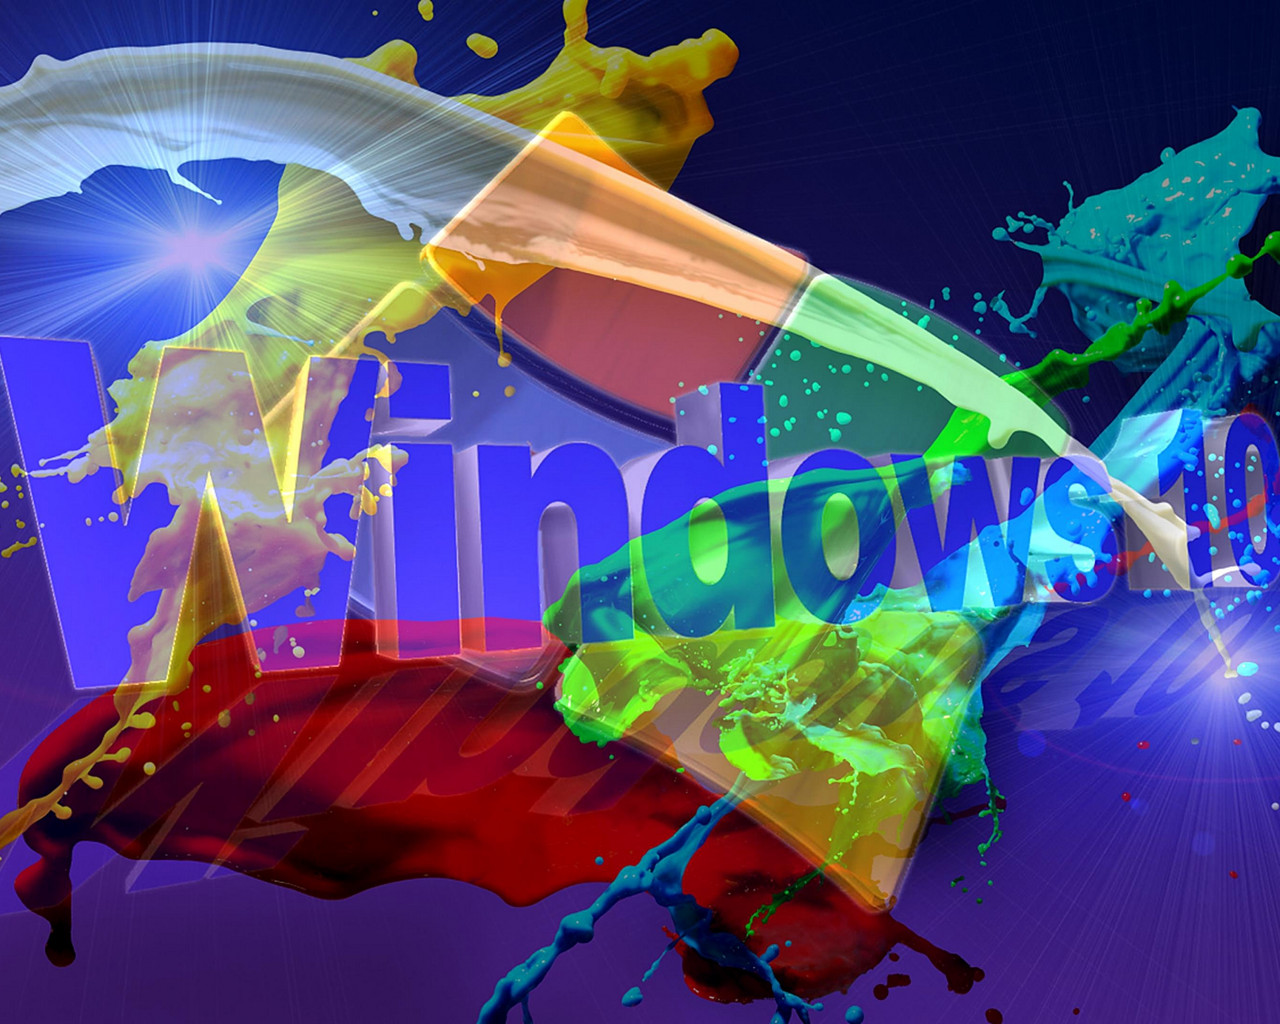 Windows (2)